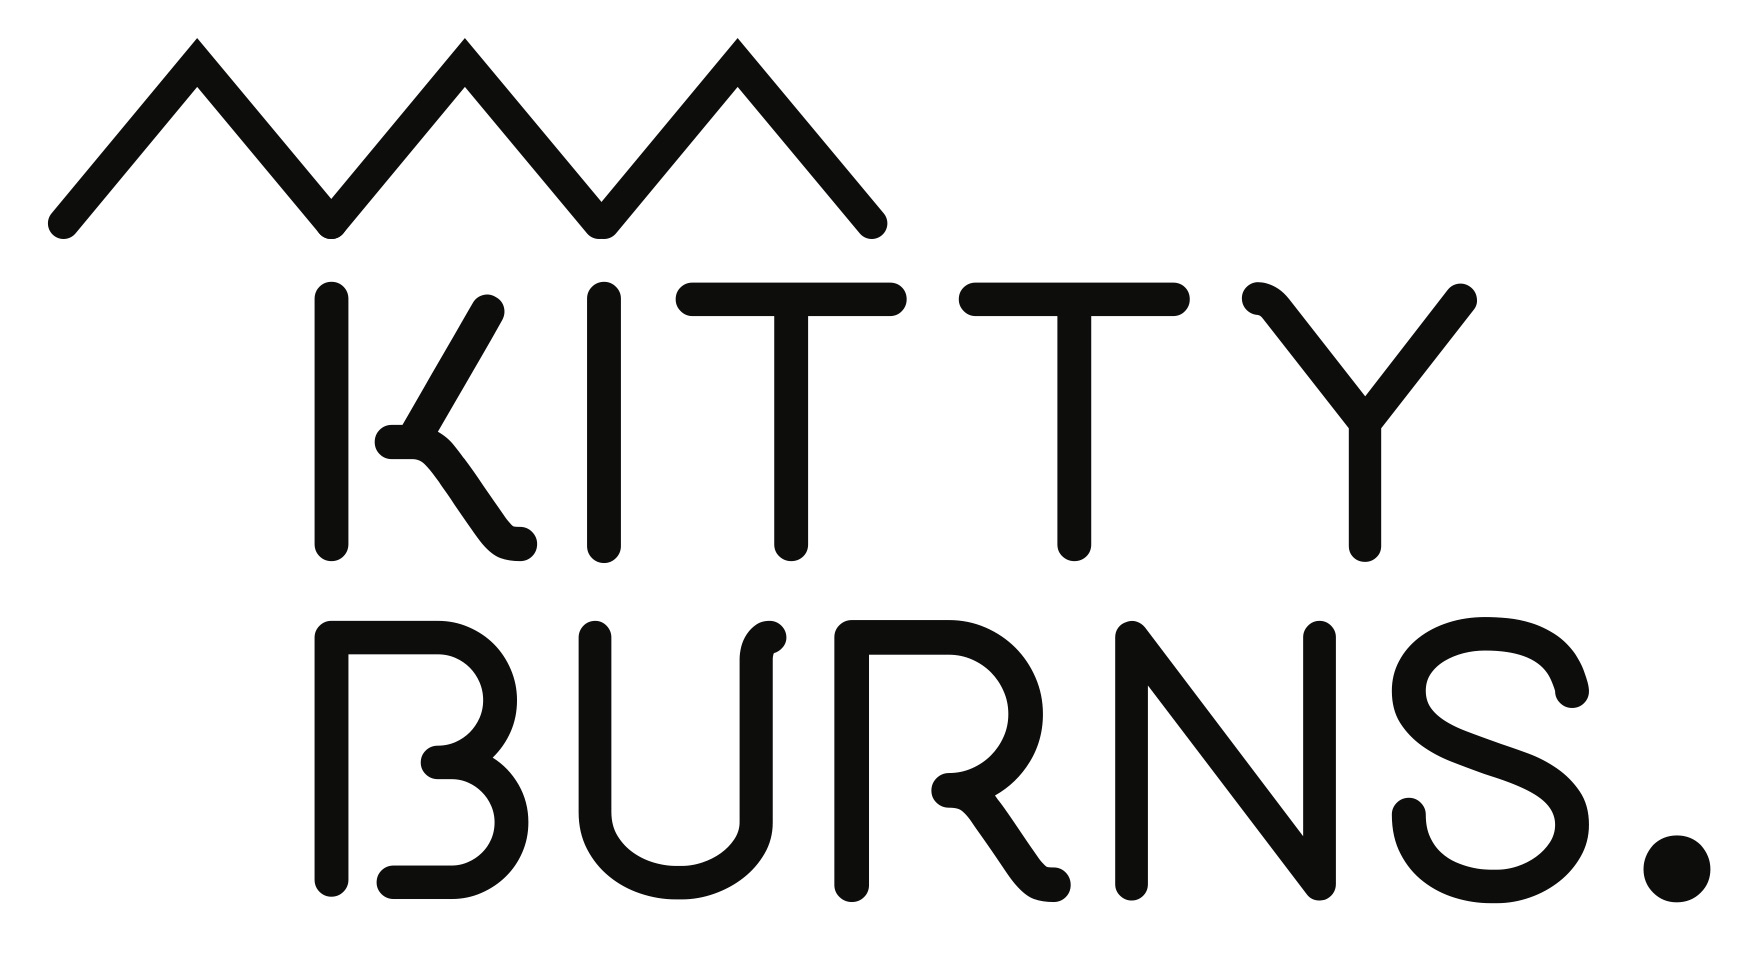 Kitty Burns